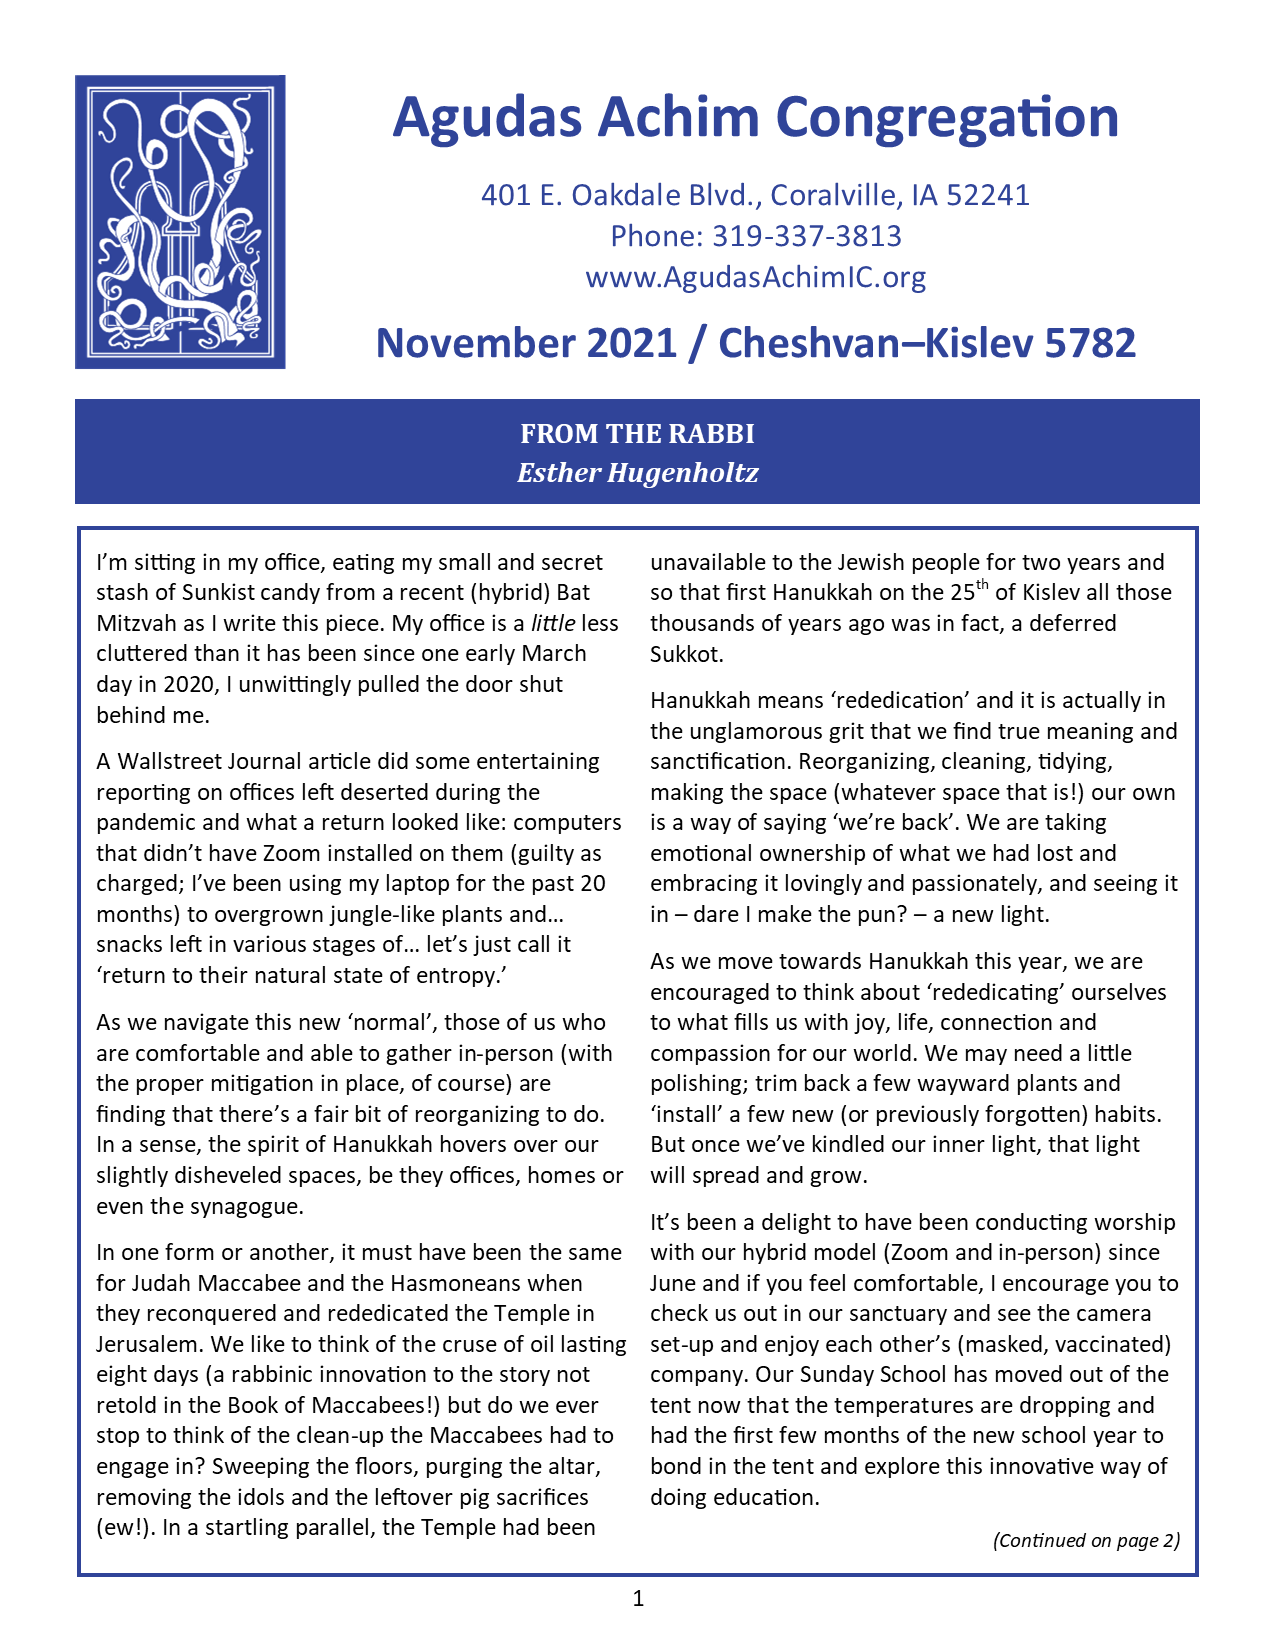 November 2021 Bulletin